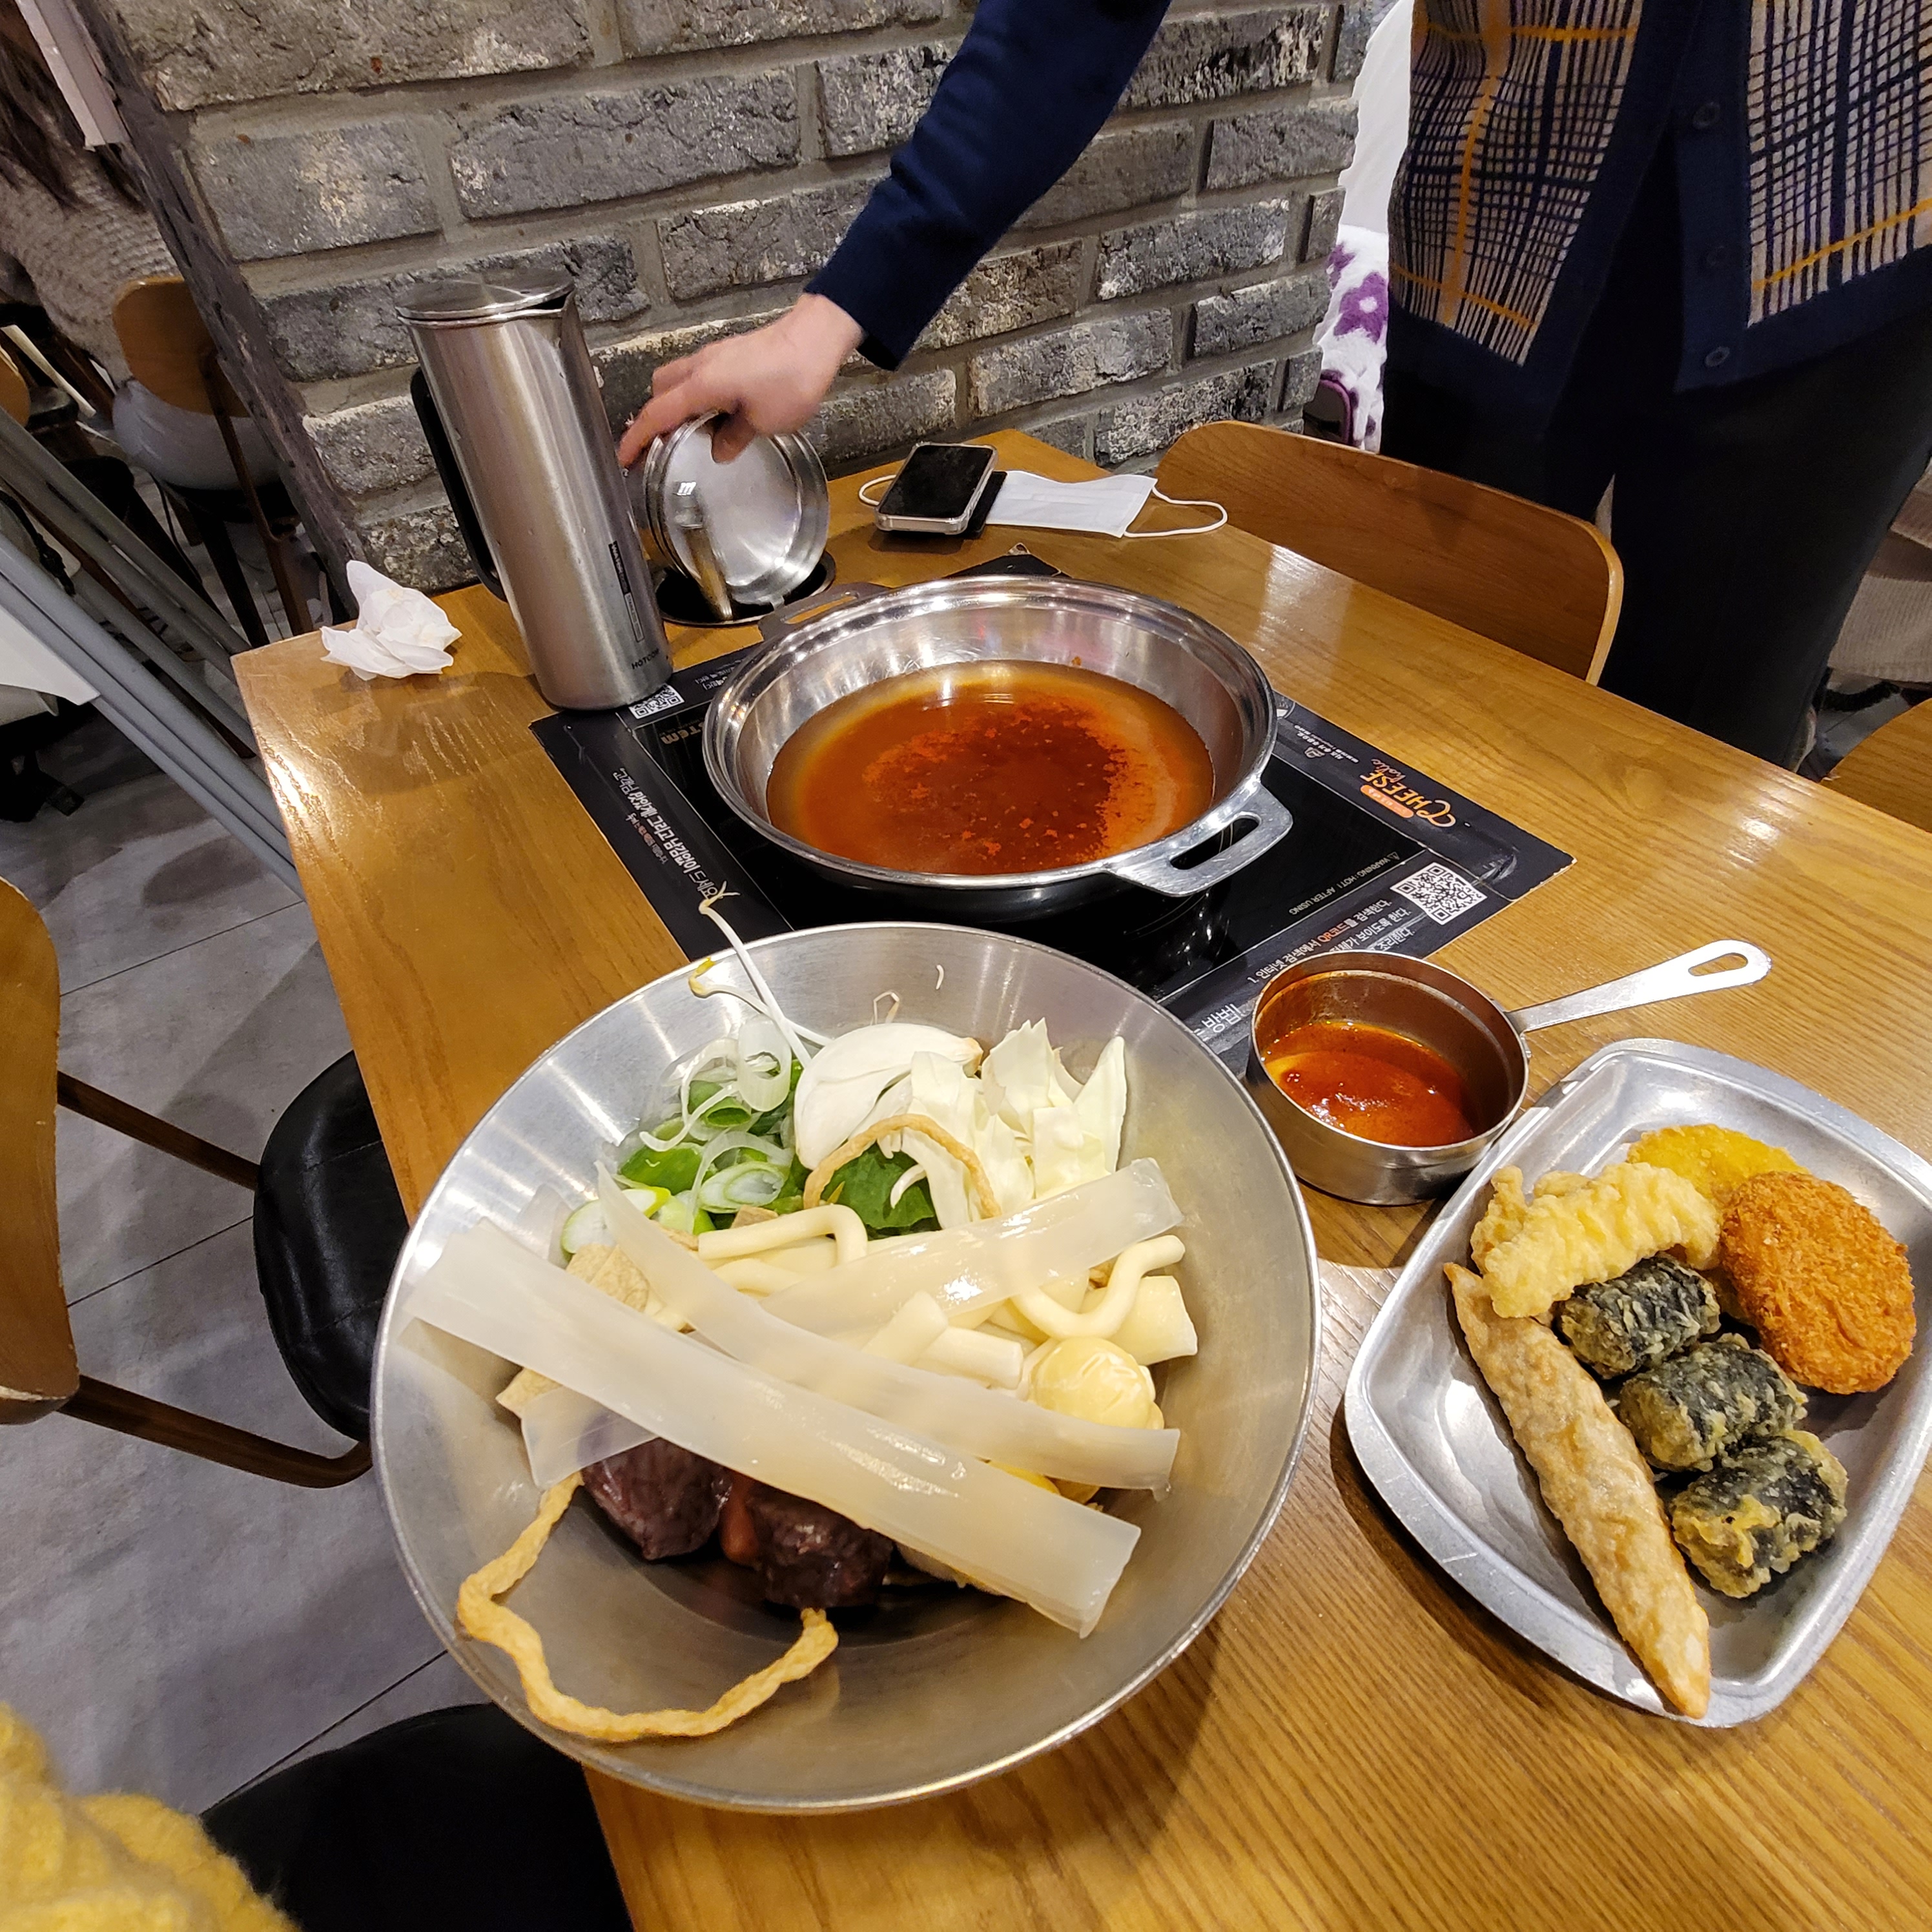 두끼 떡볶이 테이블 위 음식들